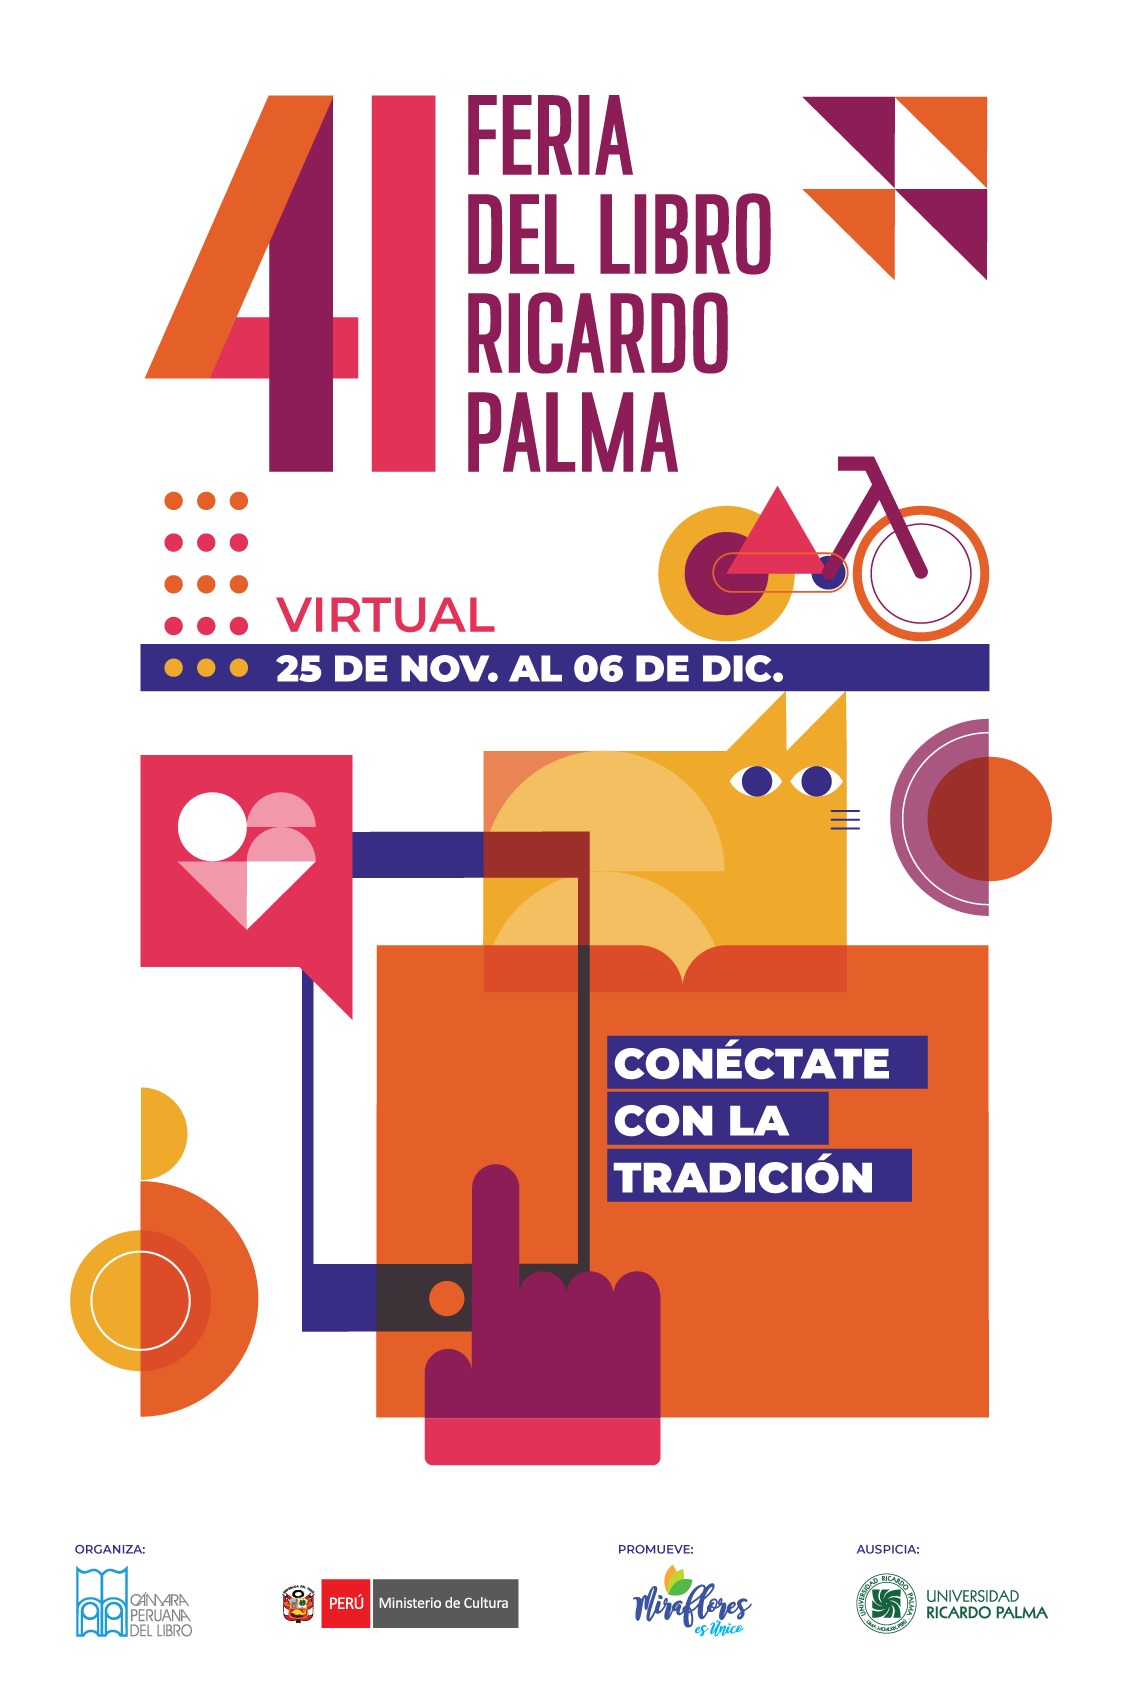 Comenzó la Feria del Libro Ricardo Palma en edición virtual